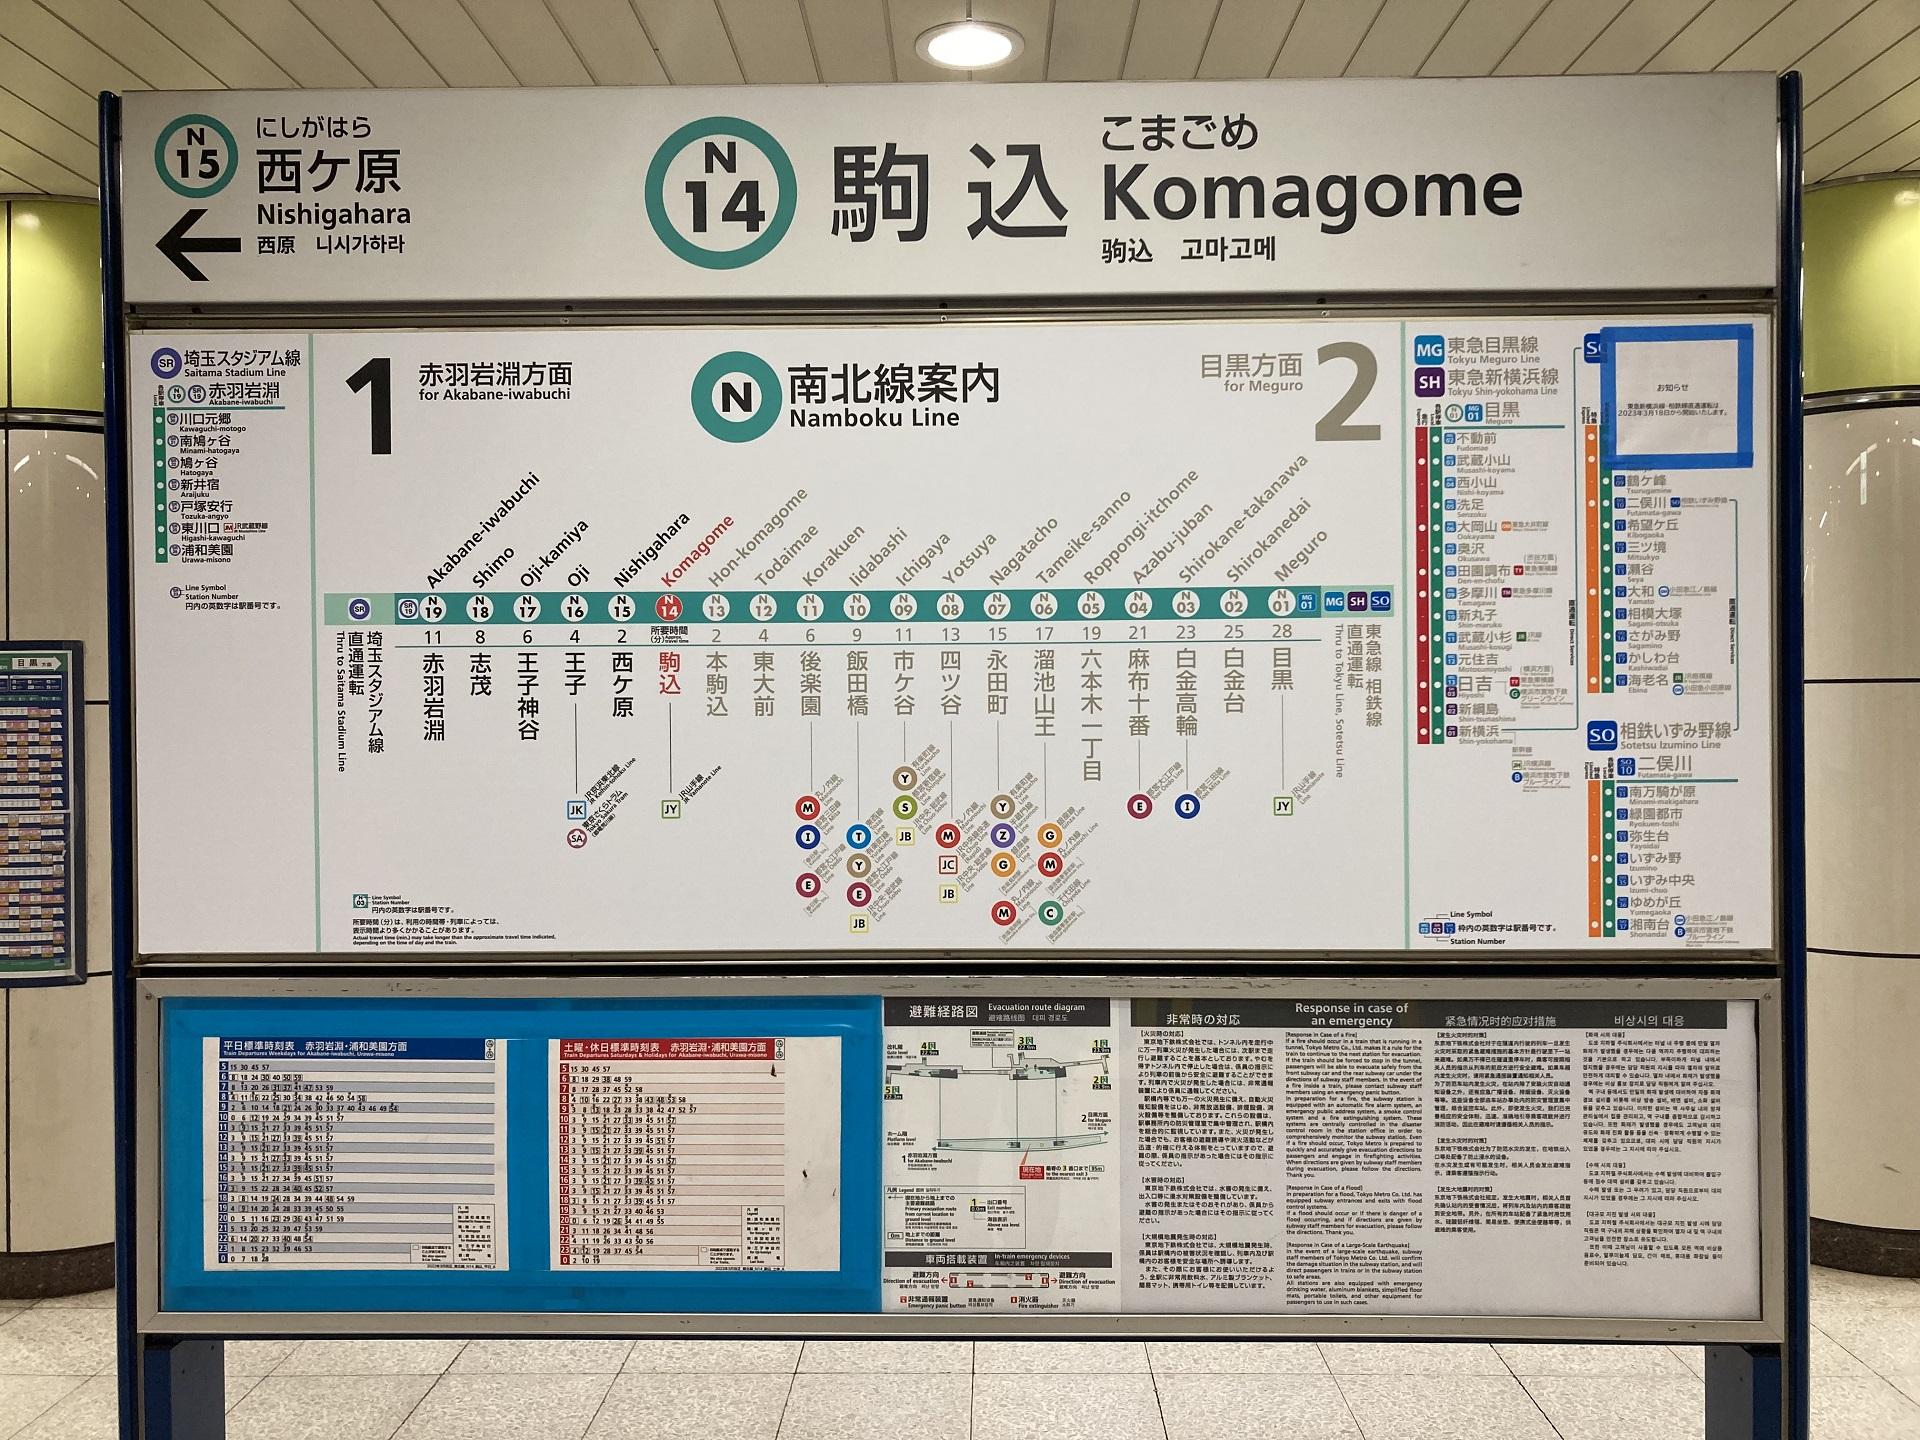 東京メトロ南北線 駒込駅 赤羽岩淵方面の路線図